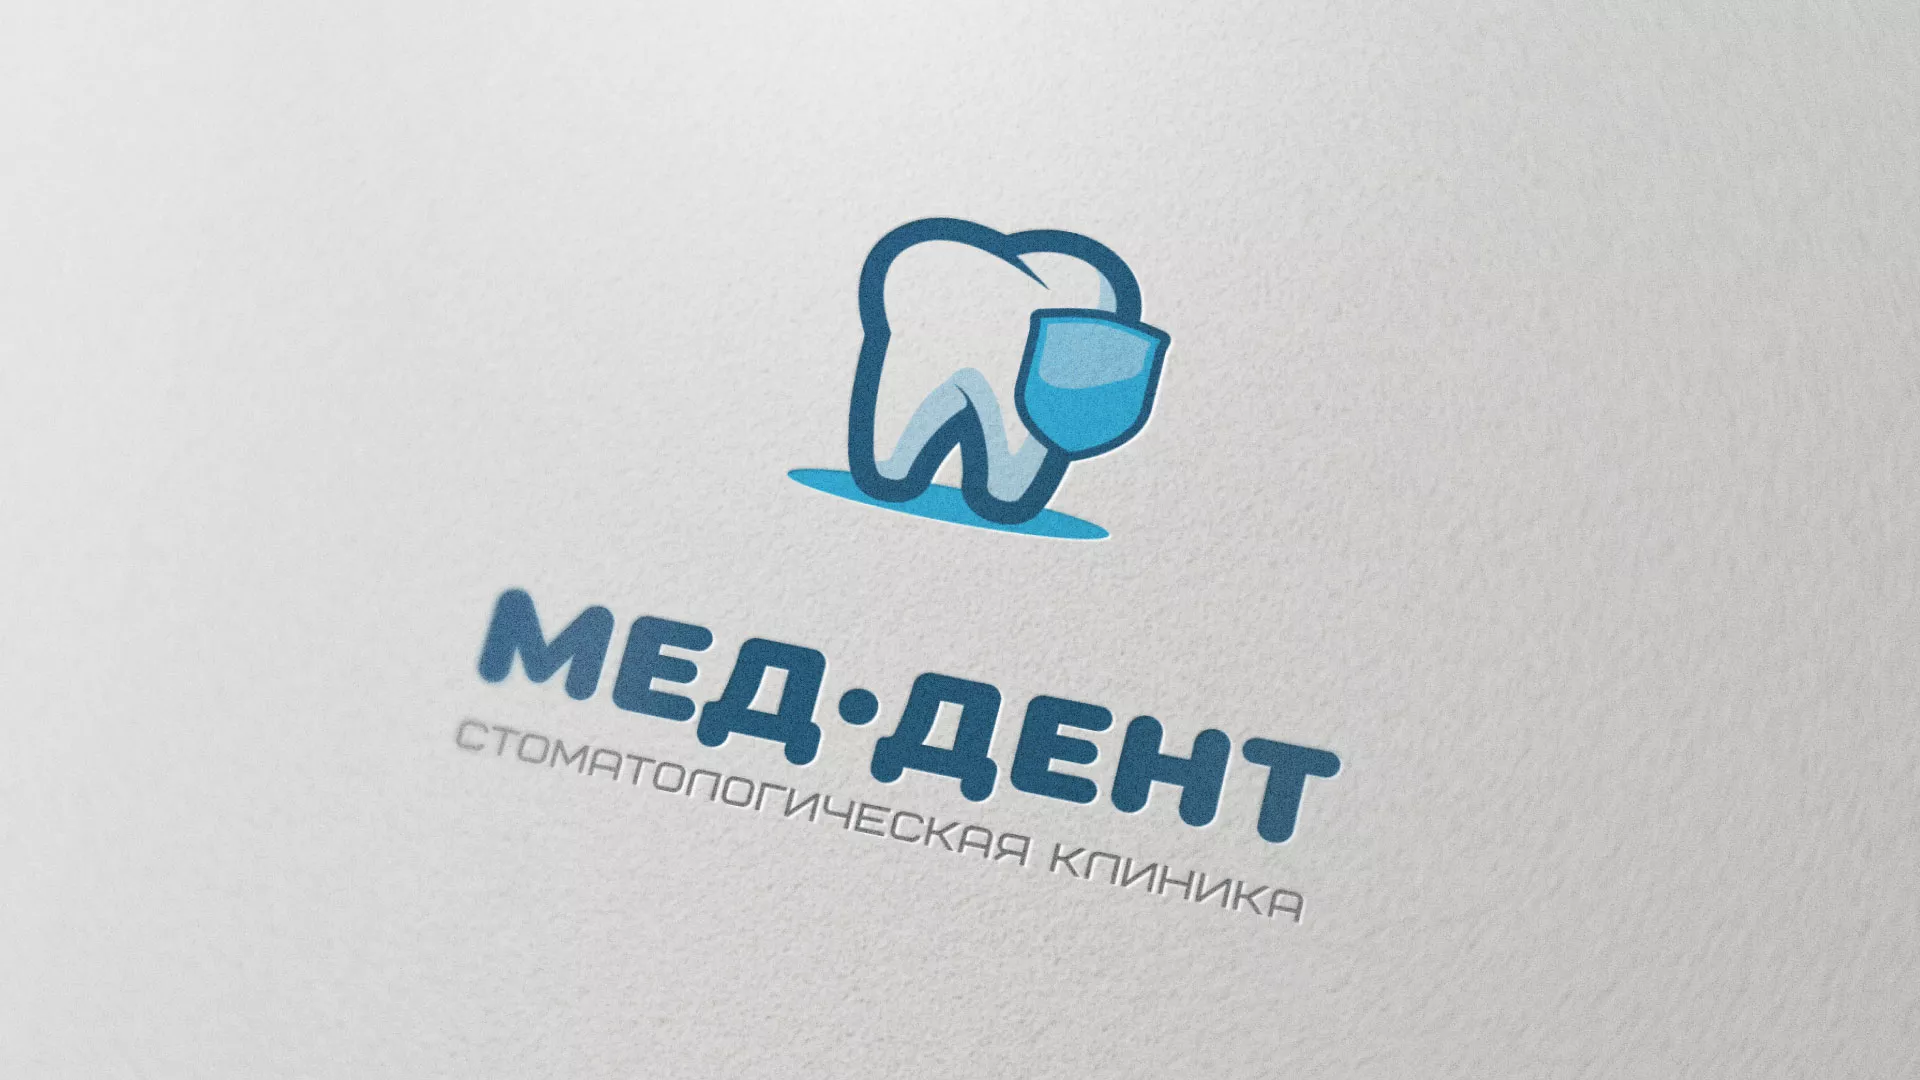 Разработка логотипа стоматологической клиники «МЕД-ДЕНТ» в Михайловке